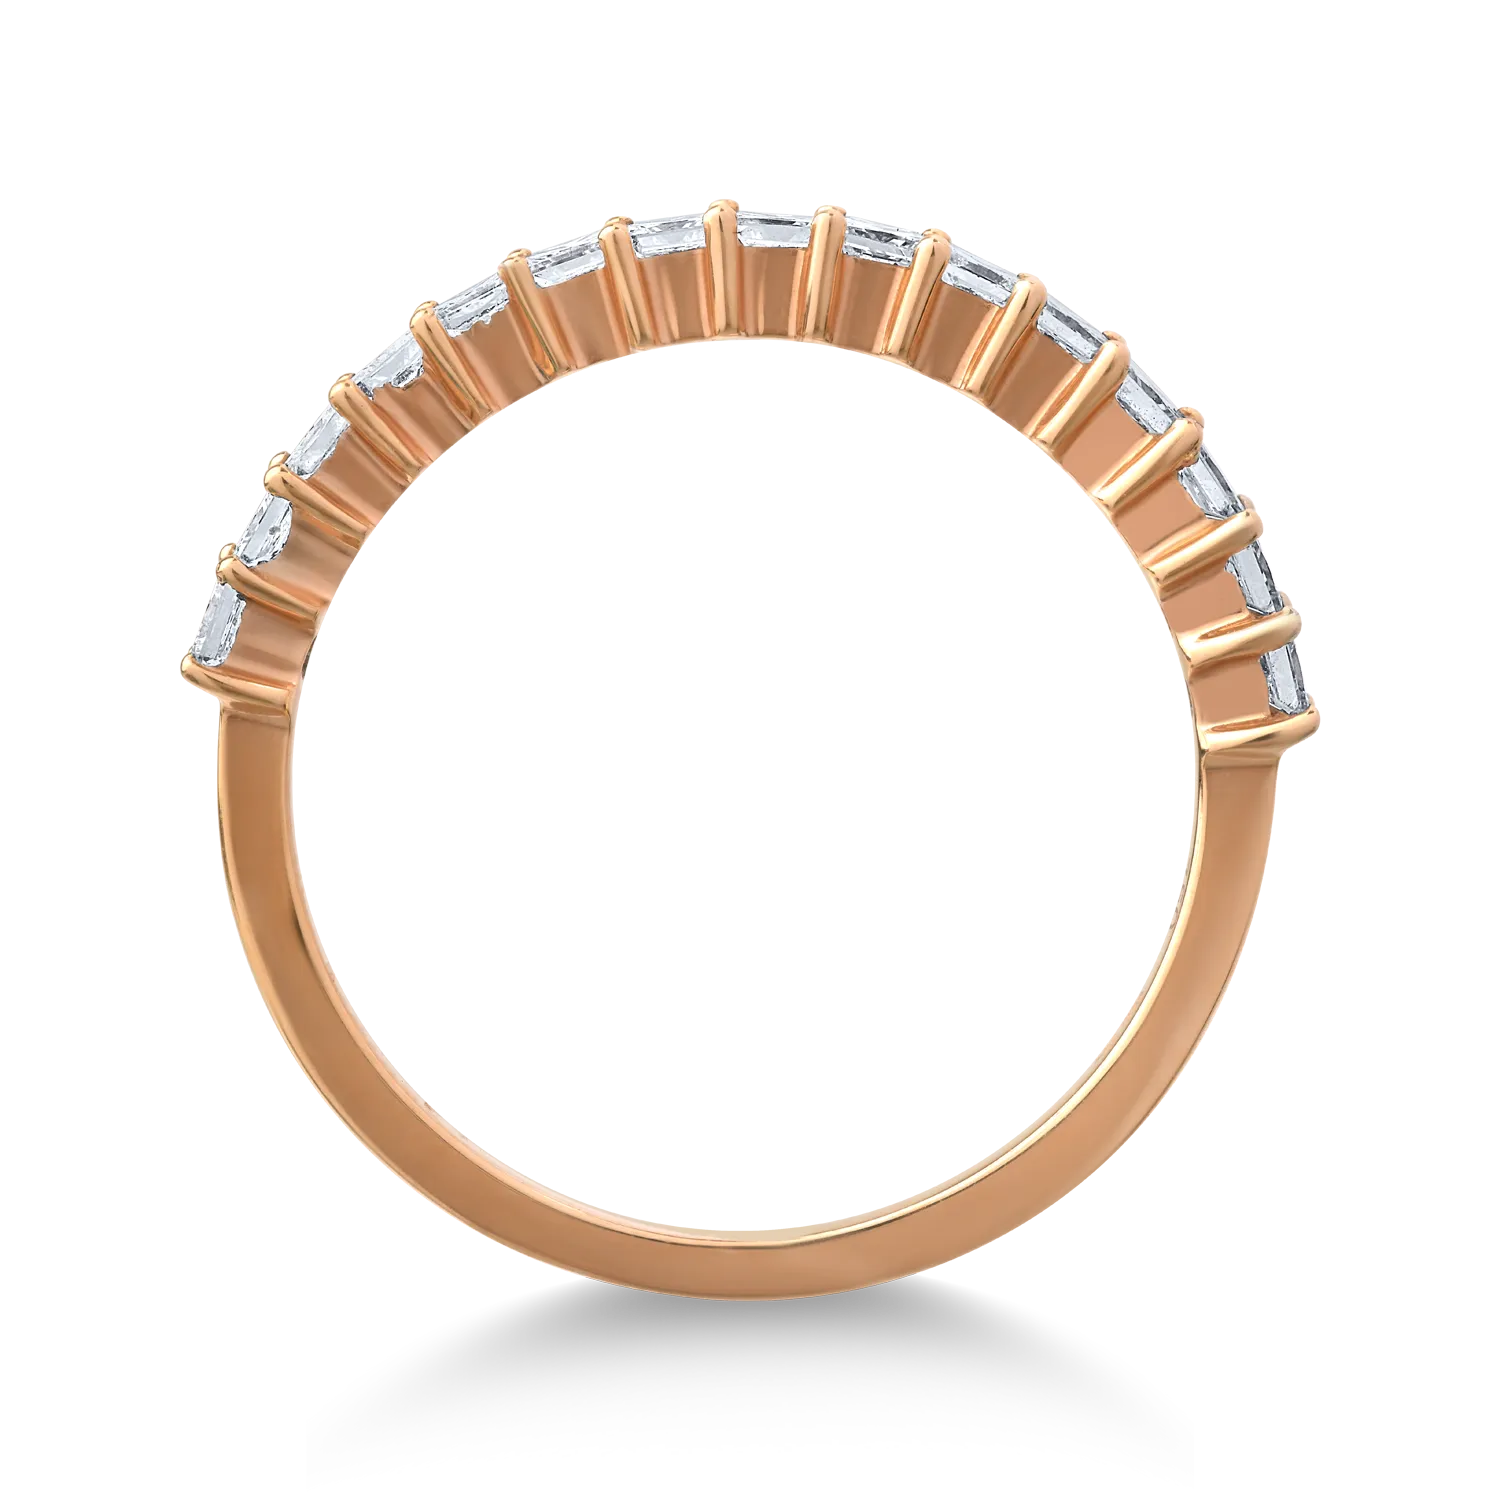 18K rózsaszín arany gyűrű 0.64ct gyémántokkal